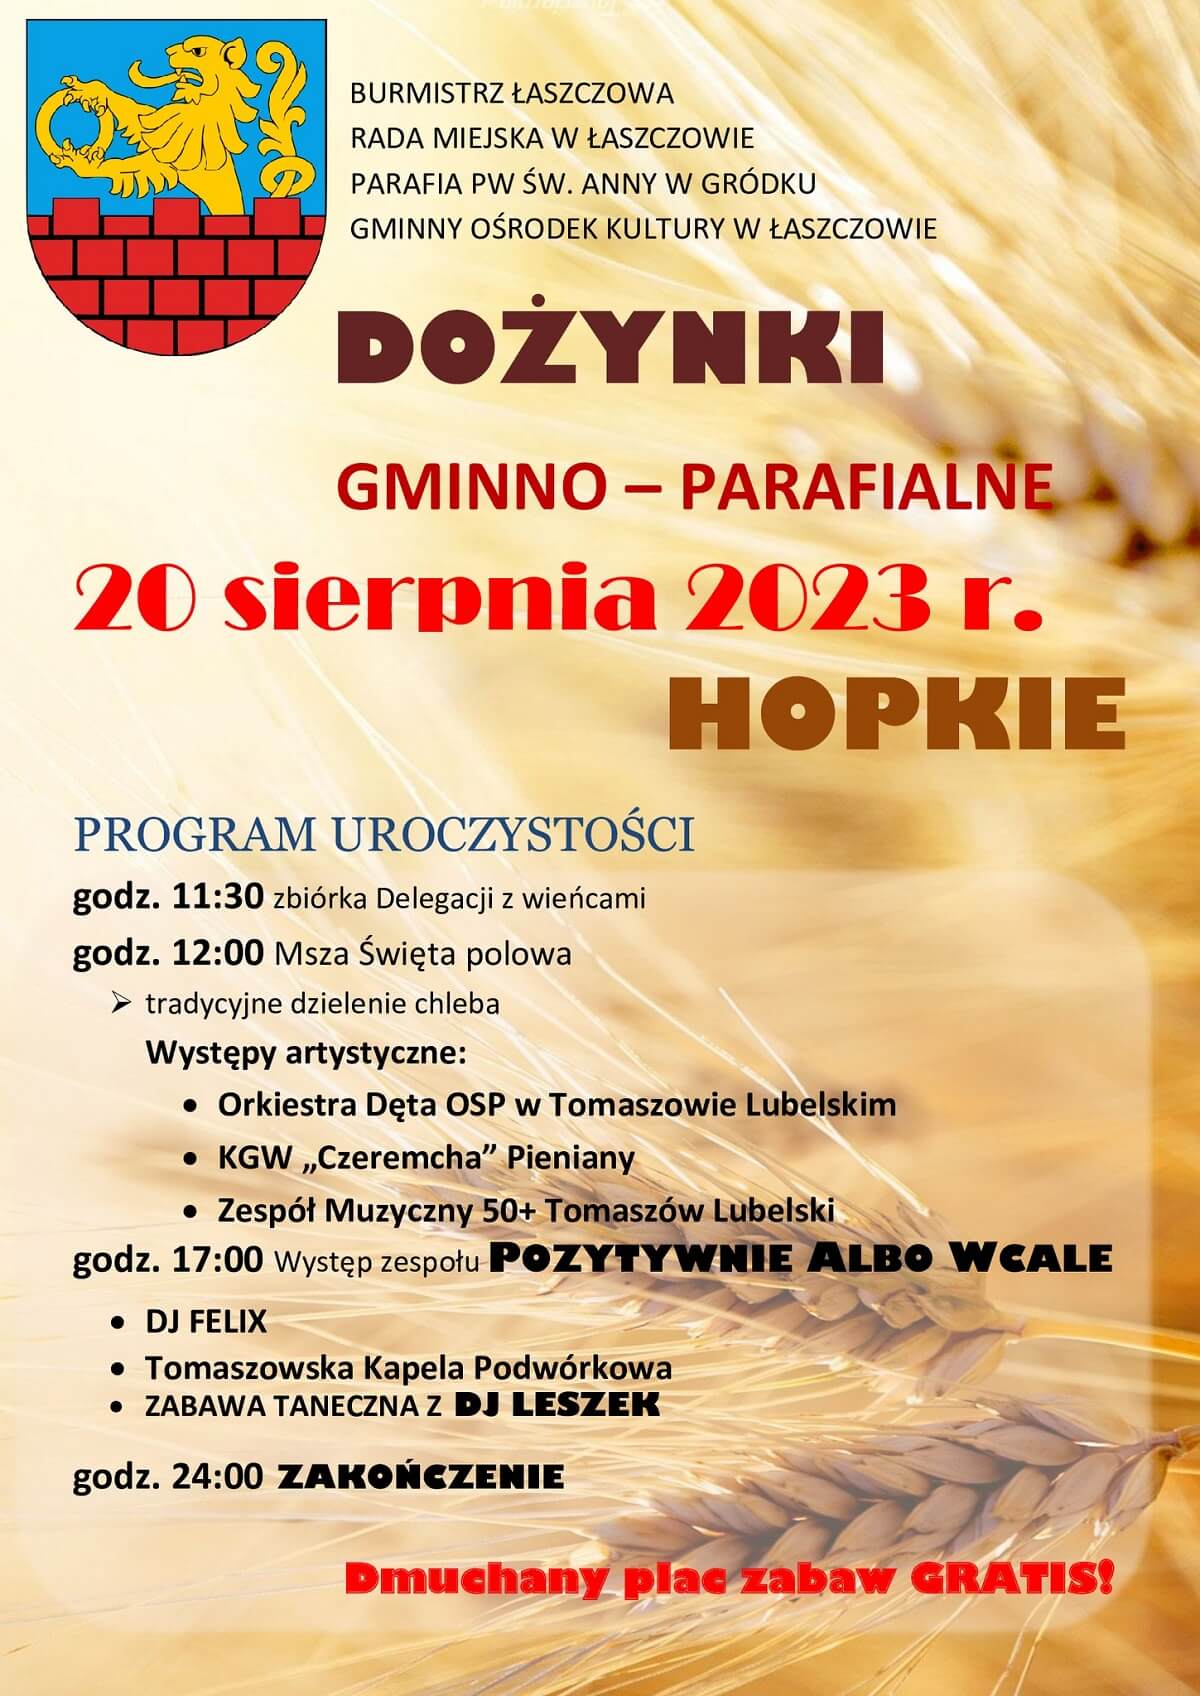 Dożynki w Hopkiem 2023 - plakat, program wydarzenia